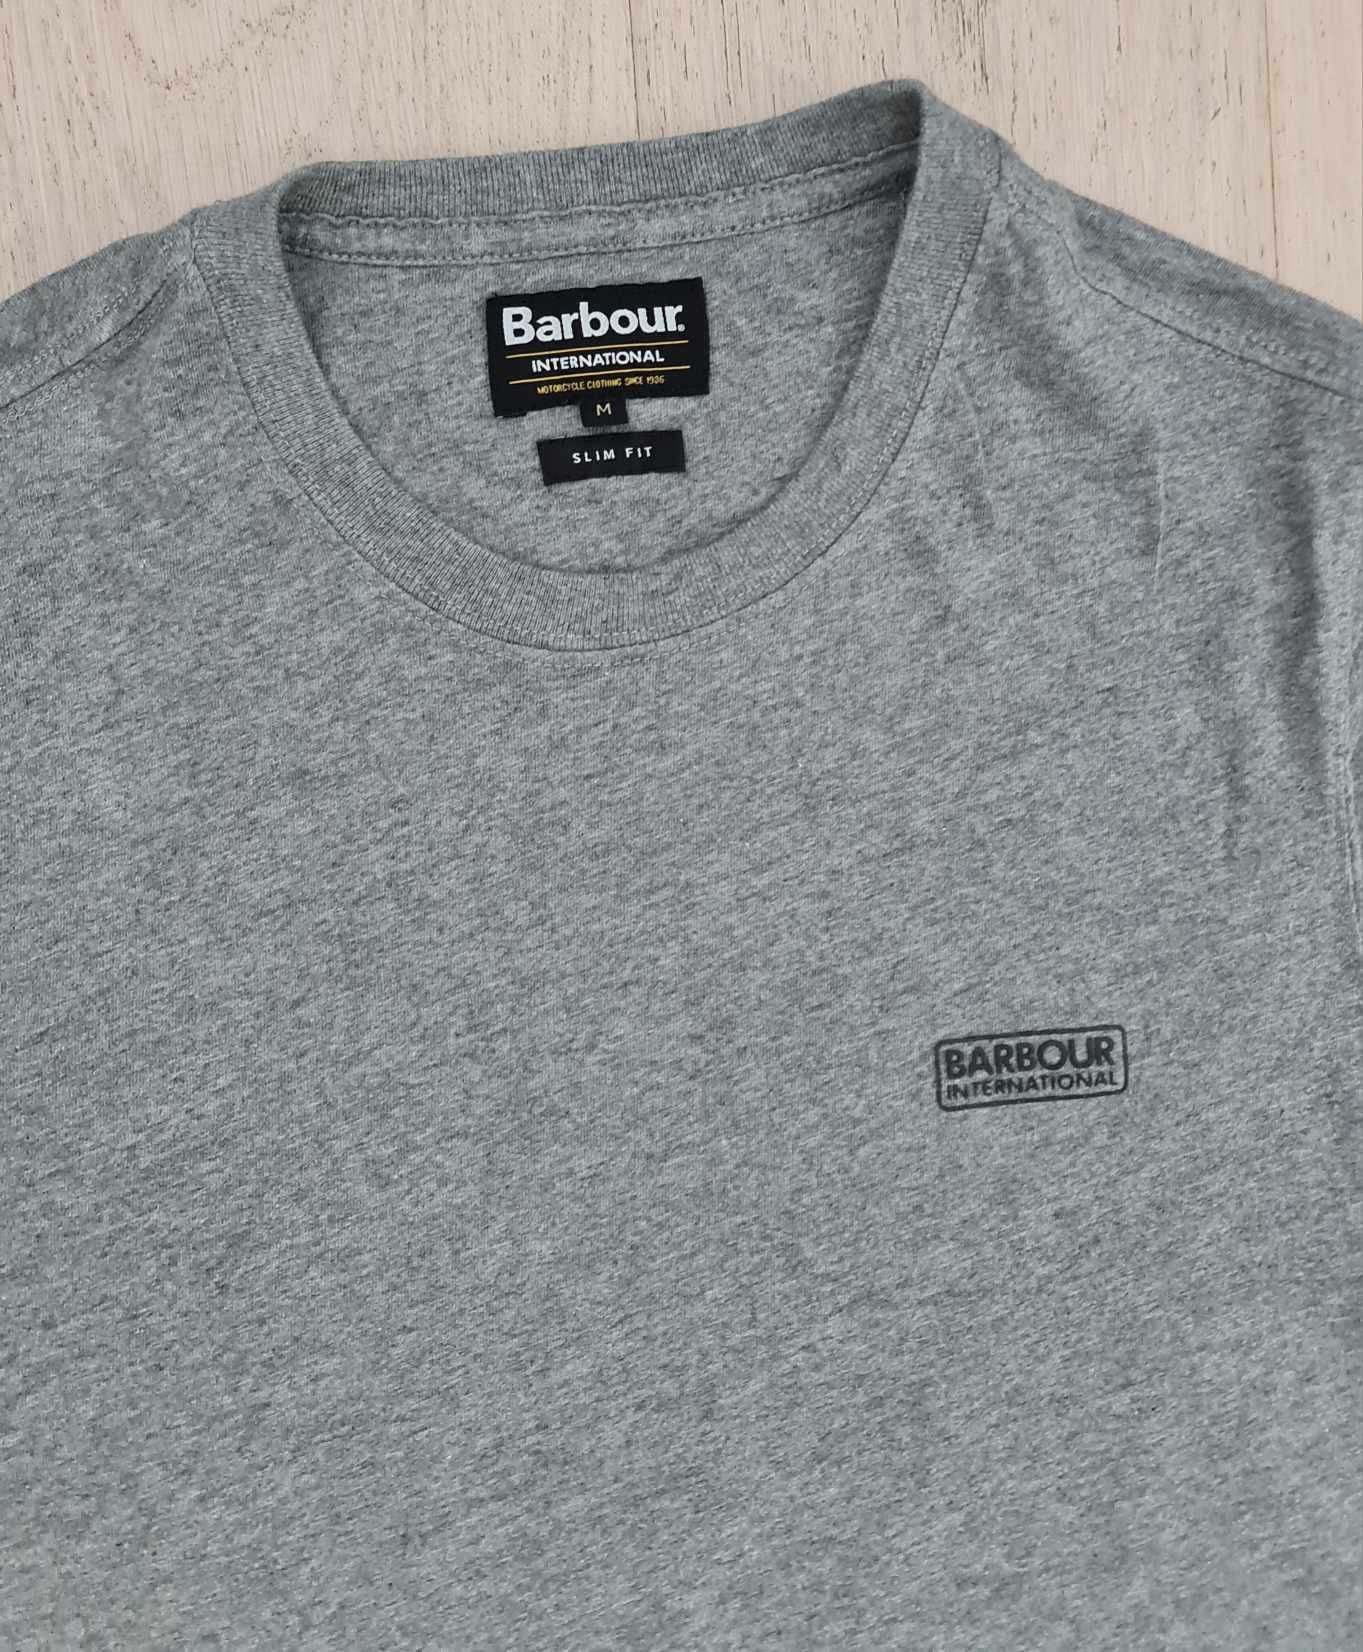 Barbour International Slim Fit M koszulka bawełniana stretch